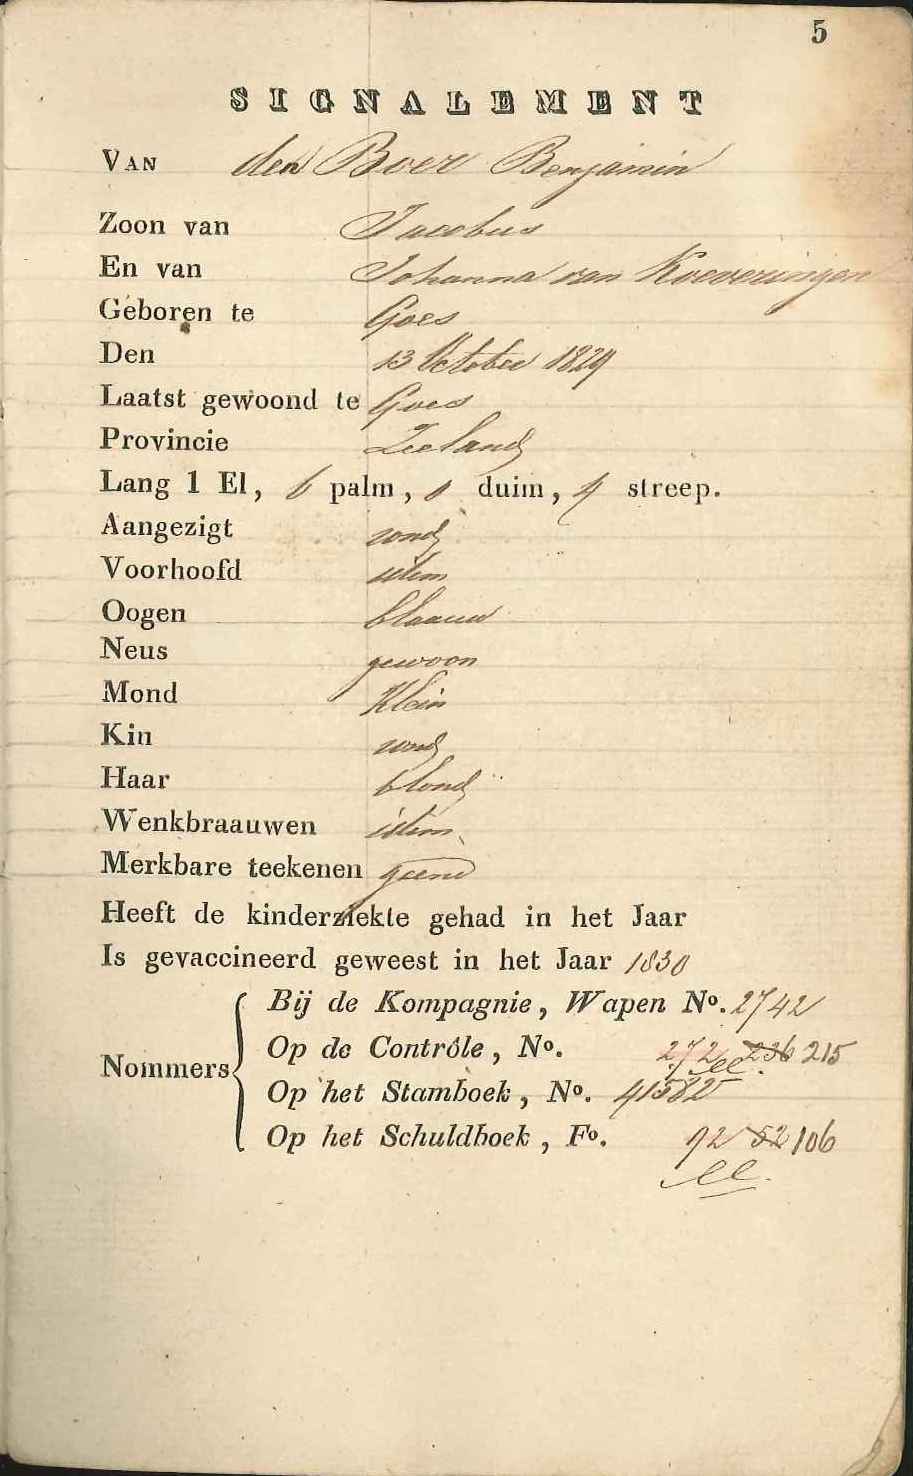 Signalement van Benjamin den Boer uit diens militair zakboekje, 1852. GAG.Hsv.inv.nr. 490.